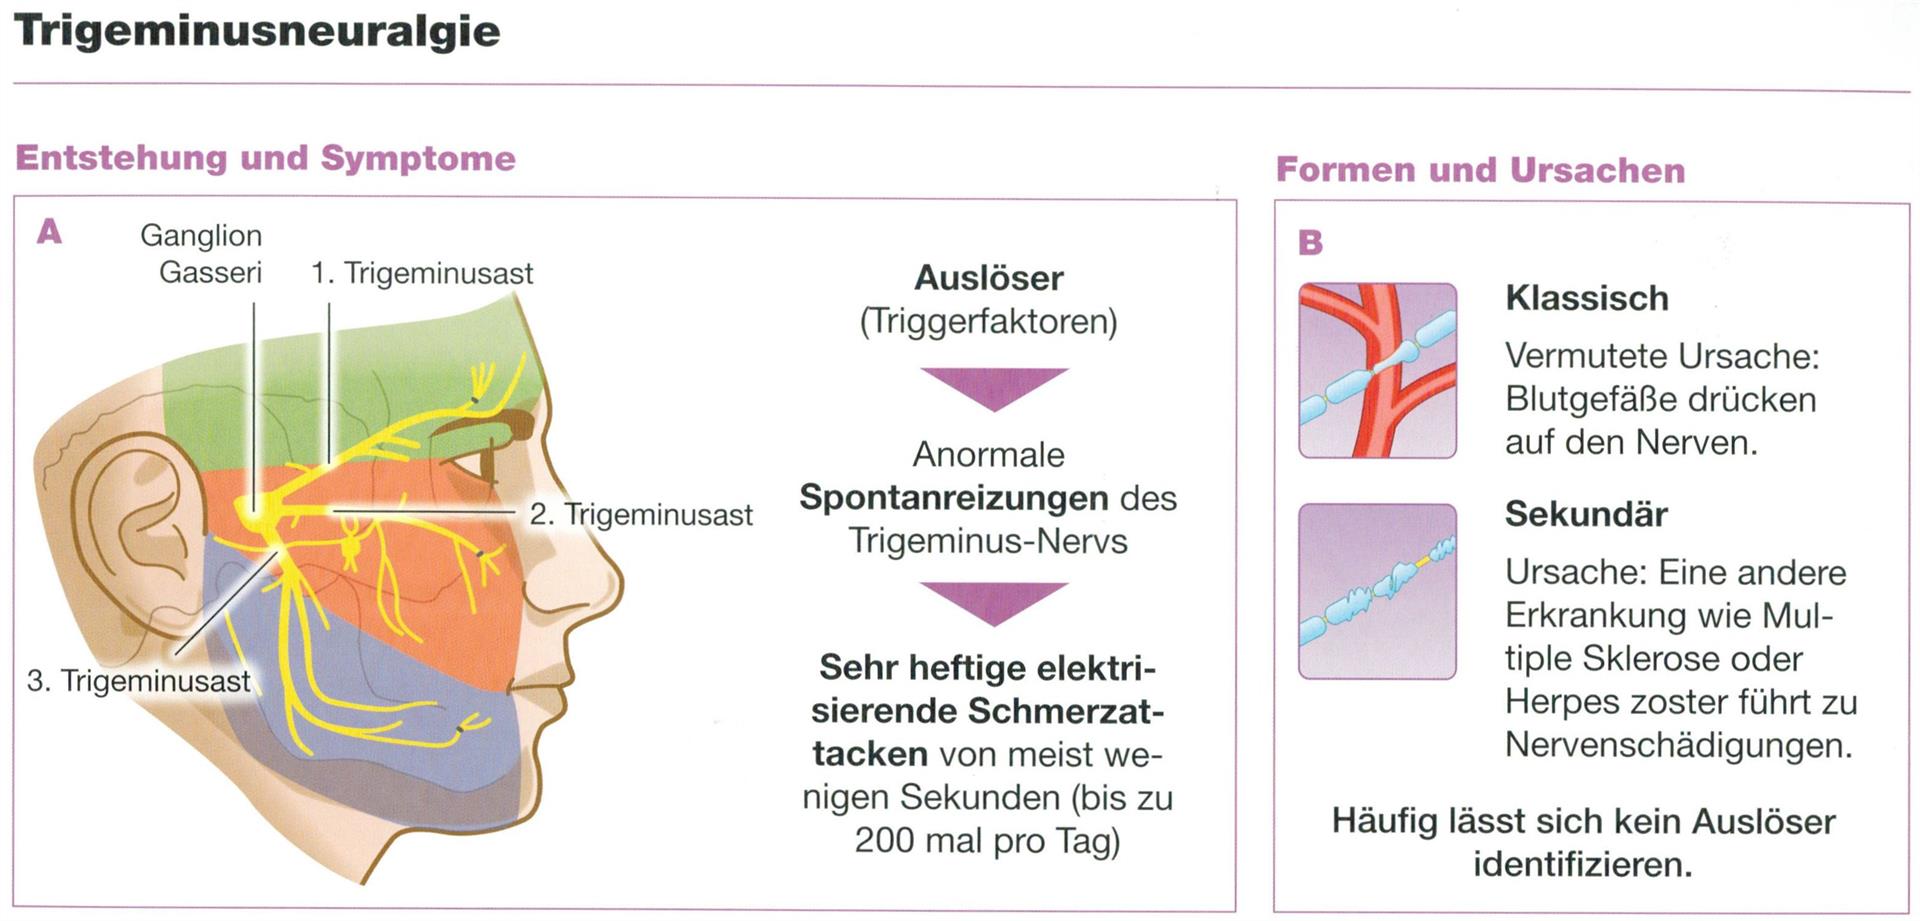 trigeminus neuralgie symptome - www.listaso.com.